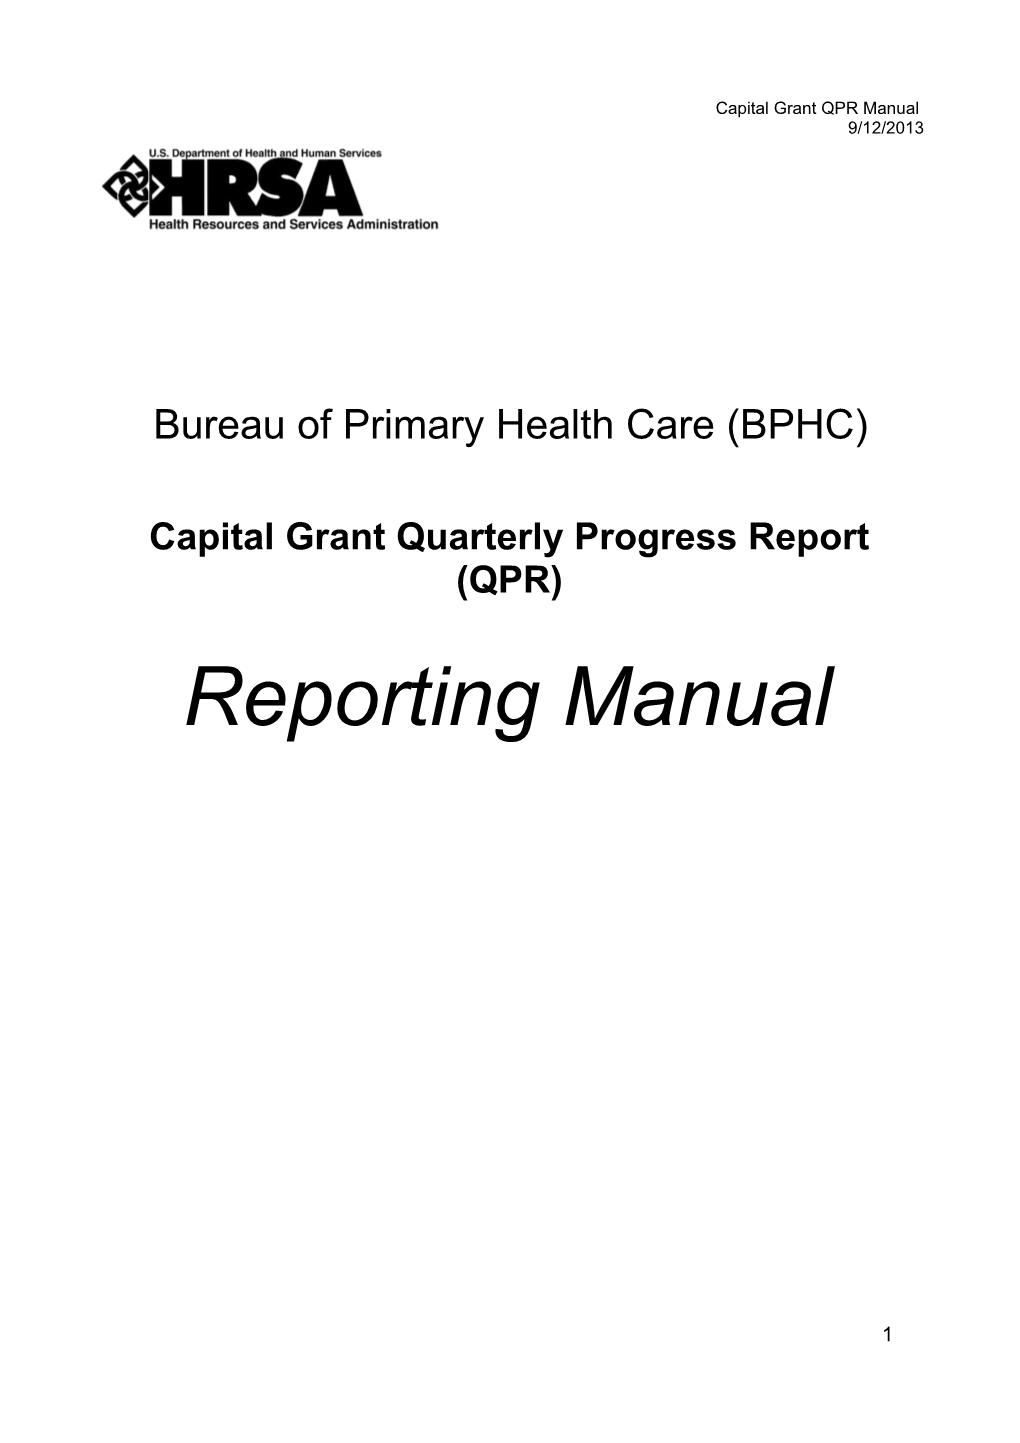 Capital Grant Quarterly Progress Report (QPR)